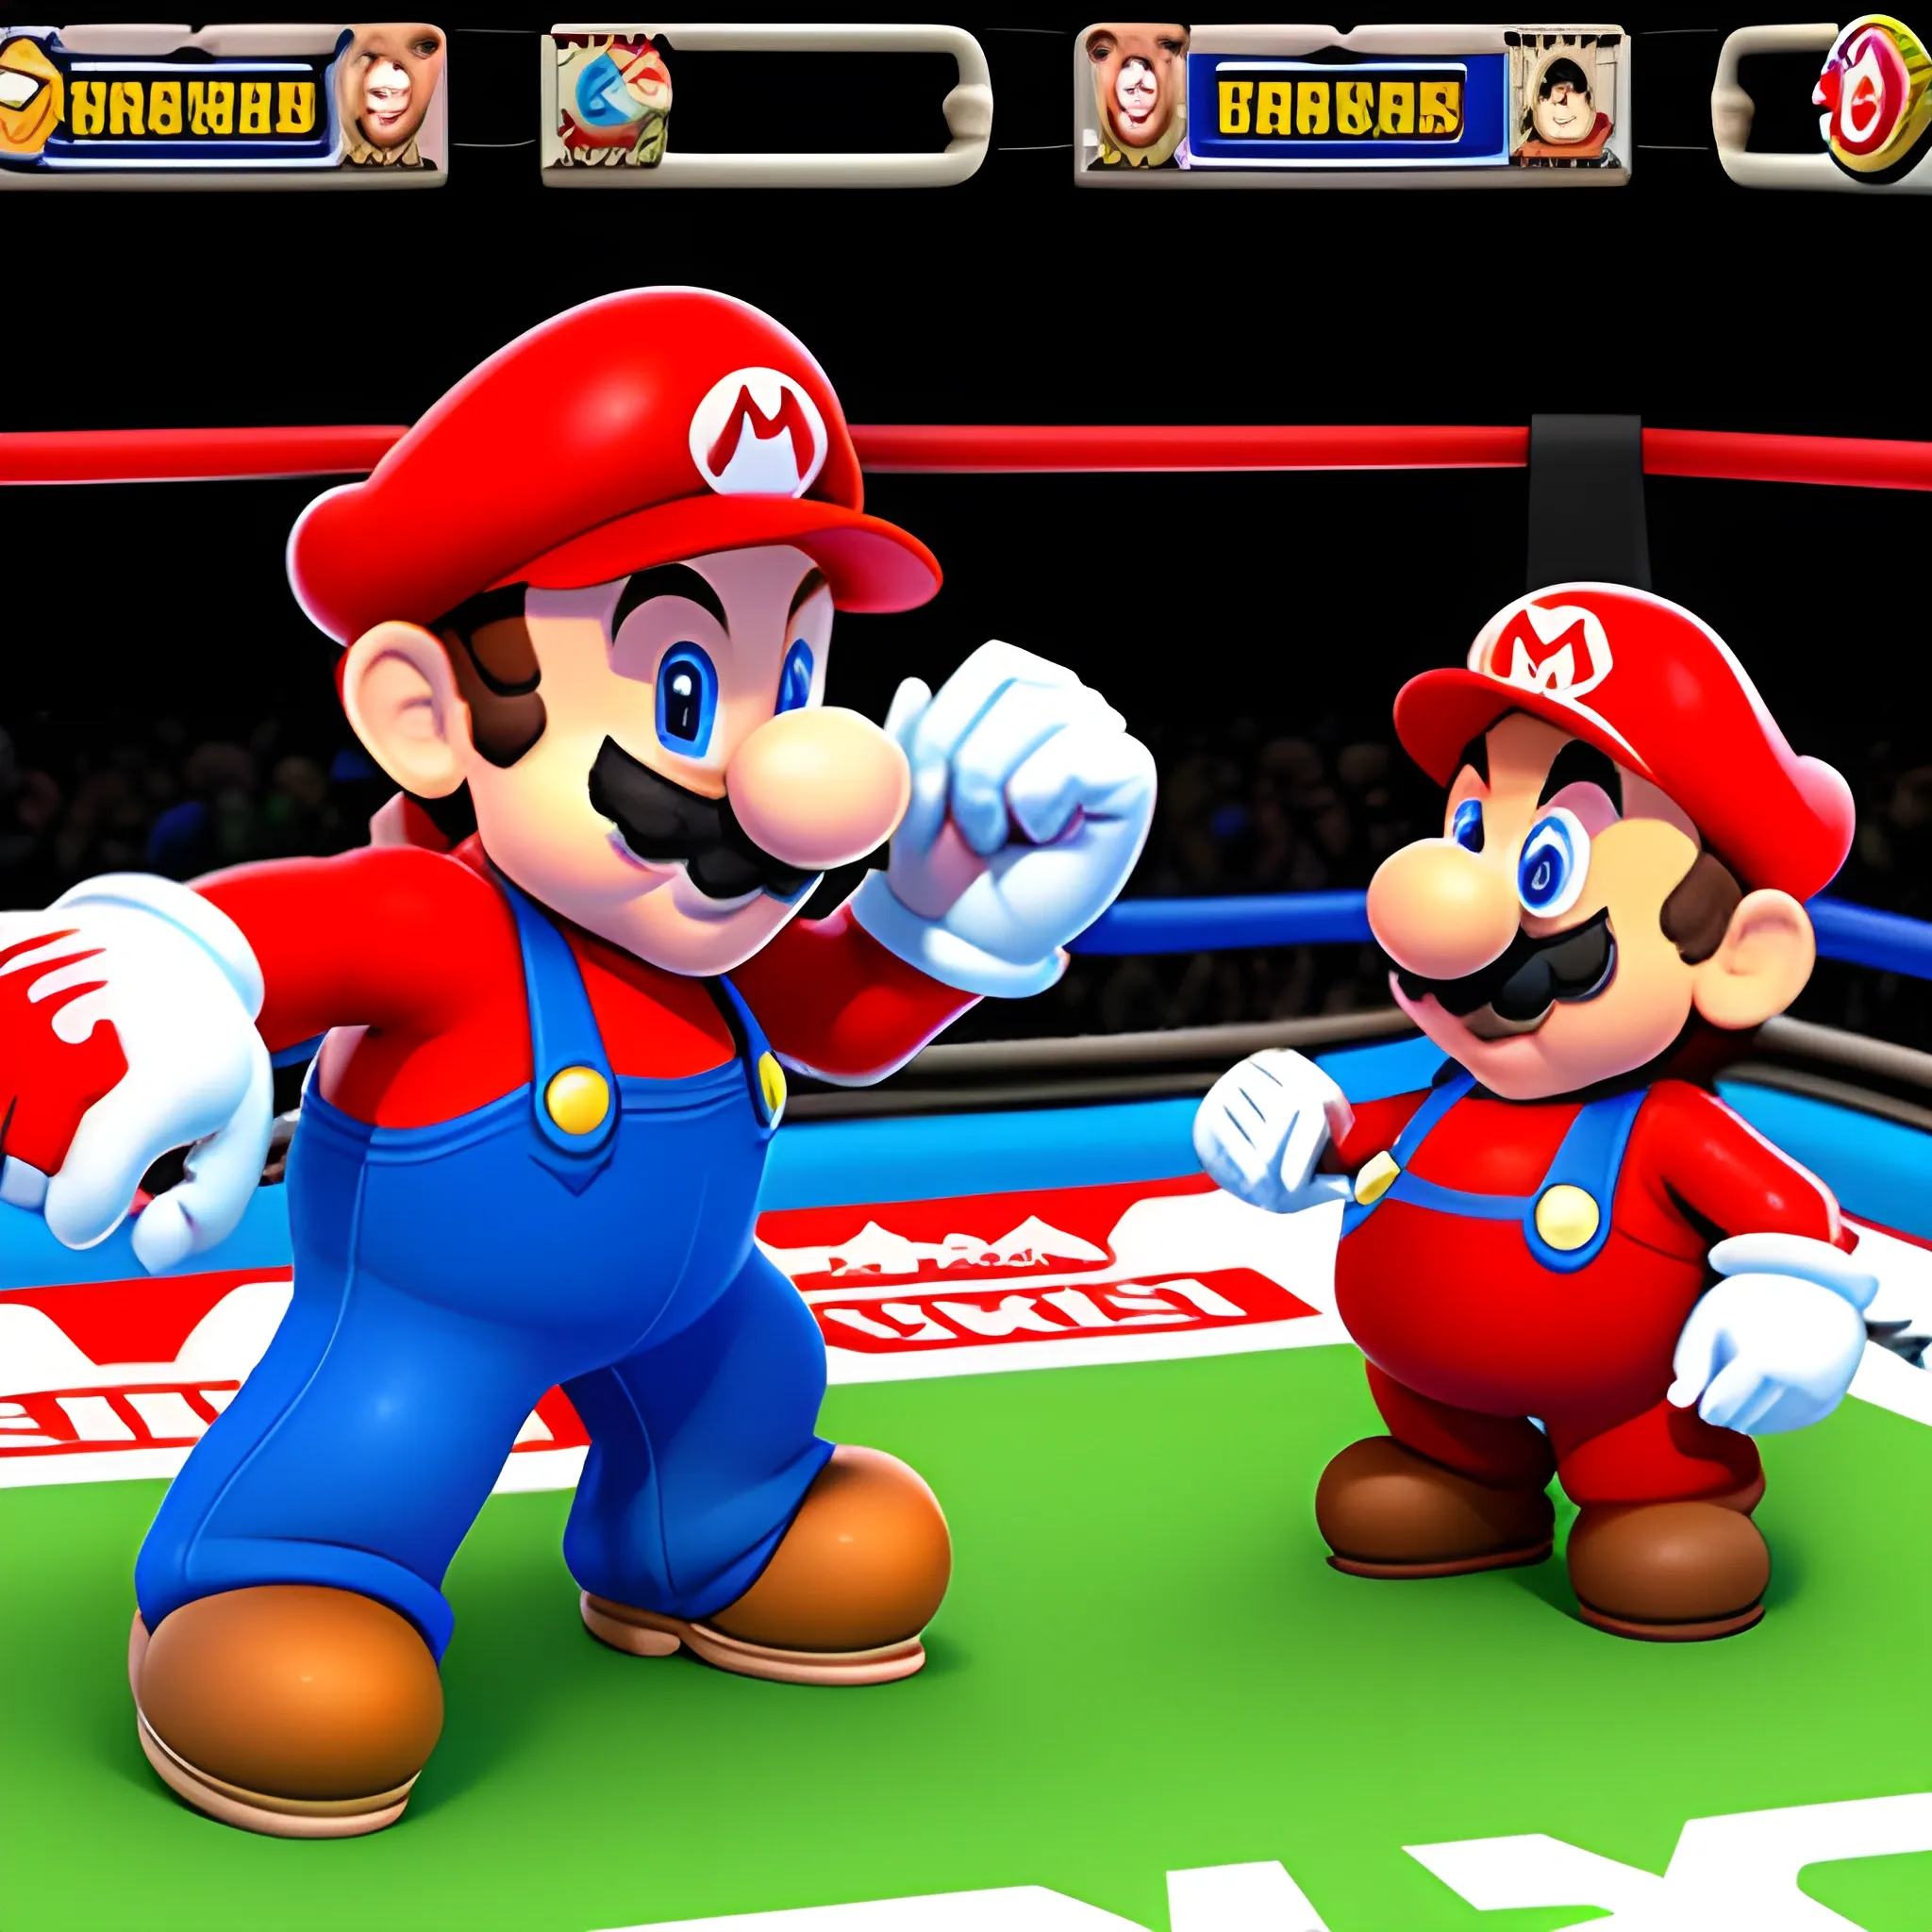 Todos los personajes existentes de Super Mario Wonder, mirando una pelea de boxeo, 3D